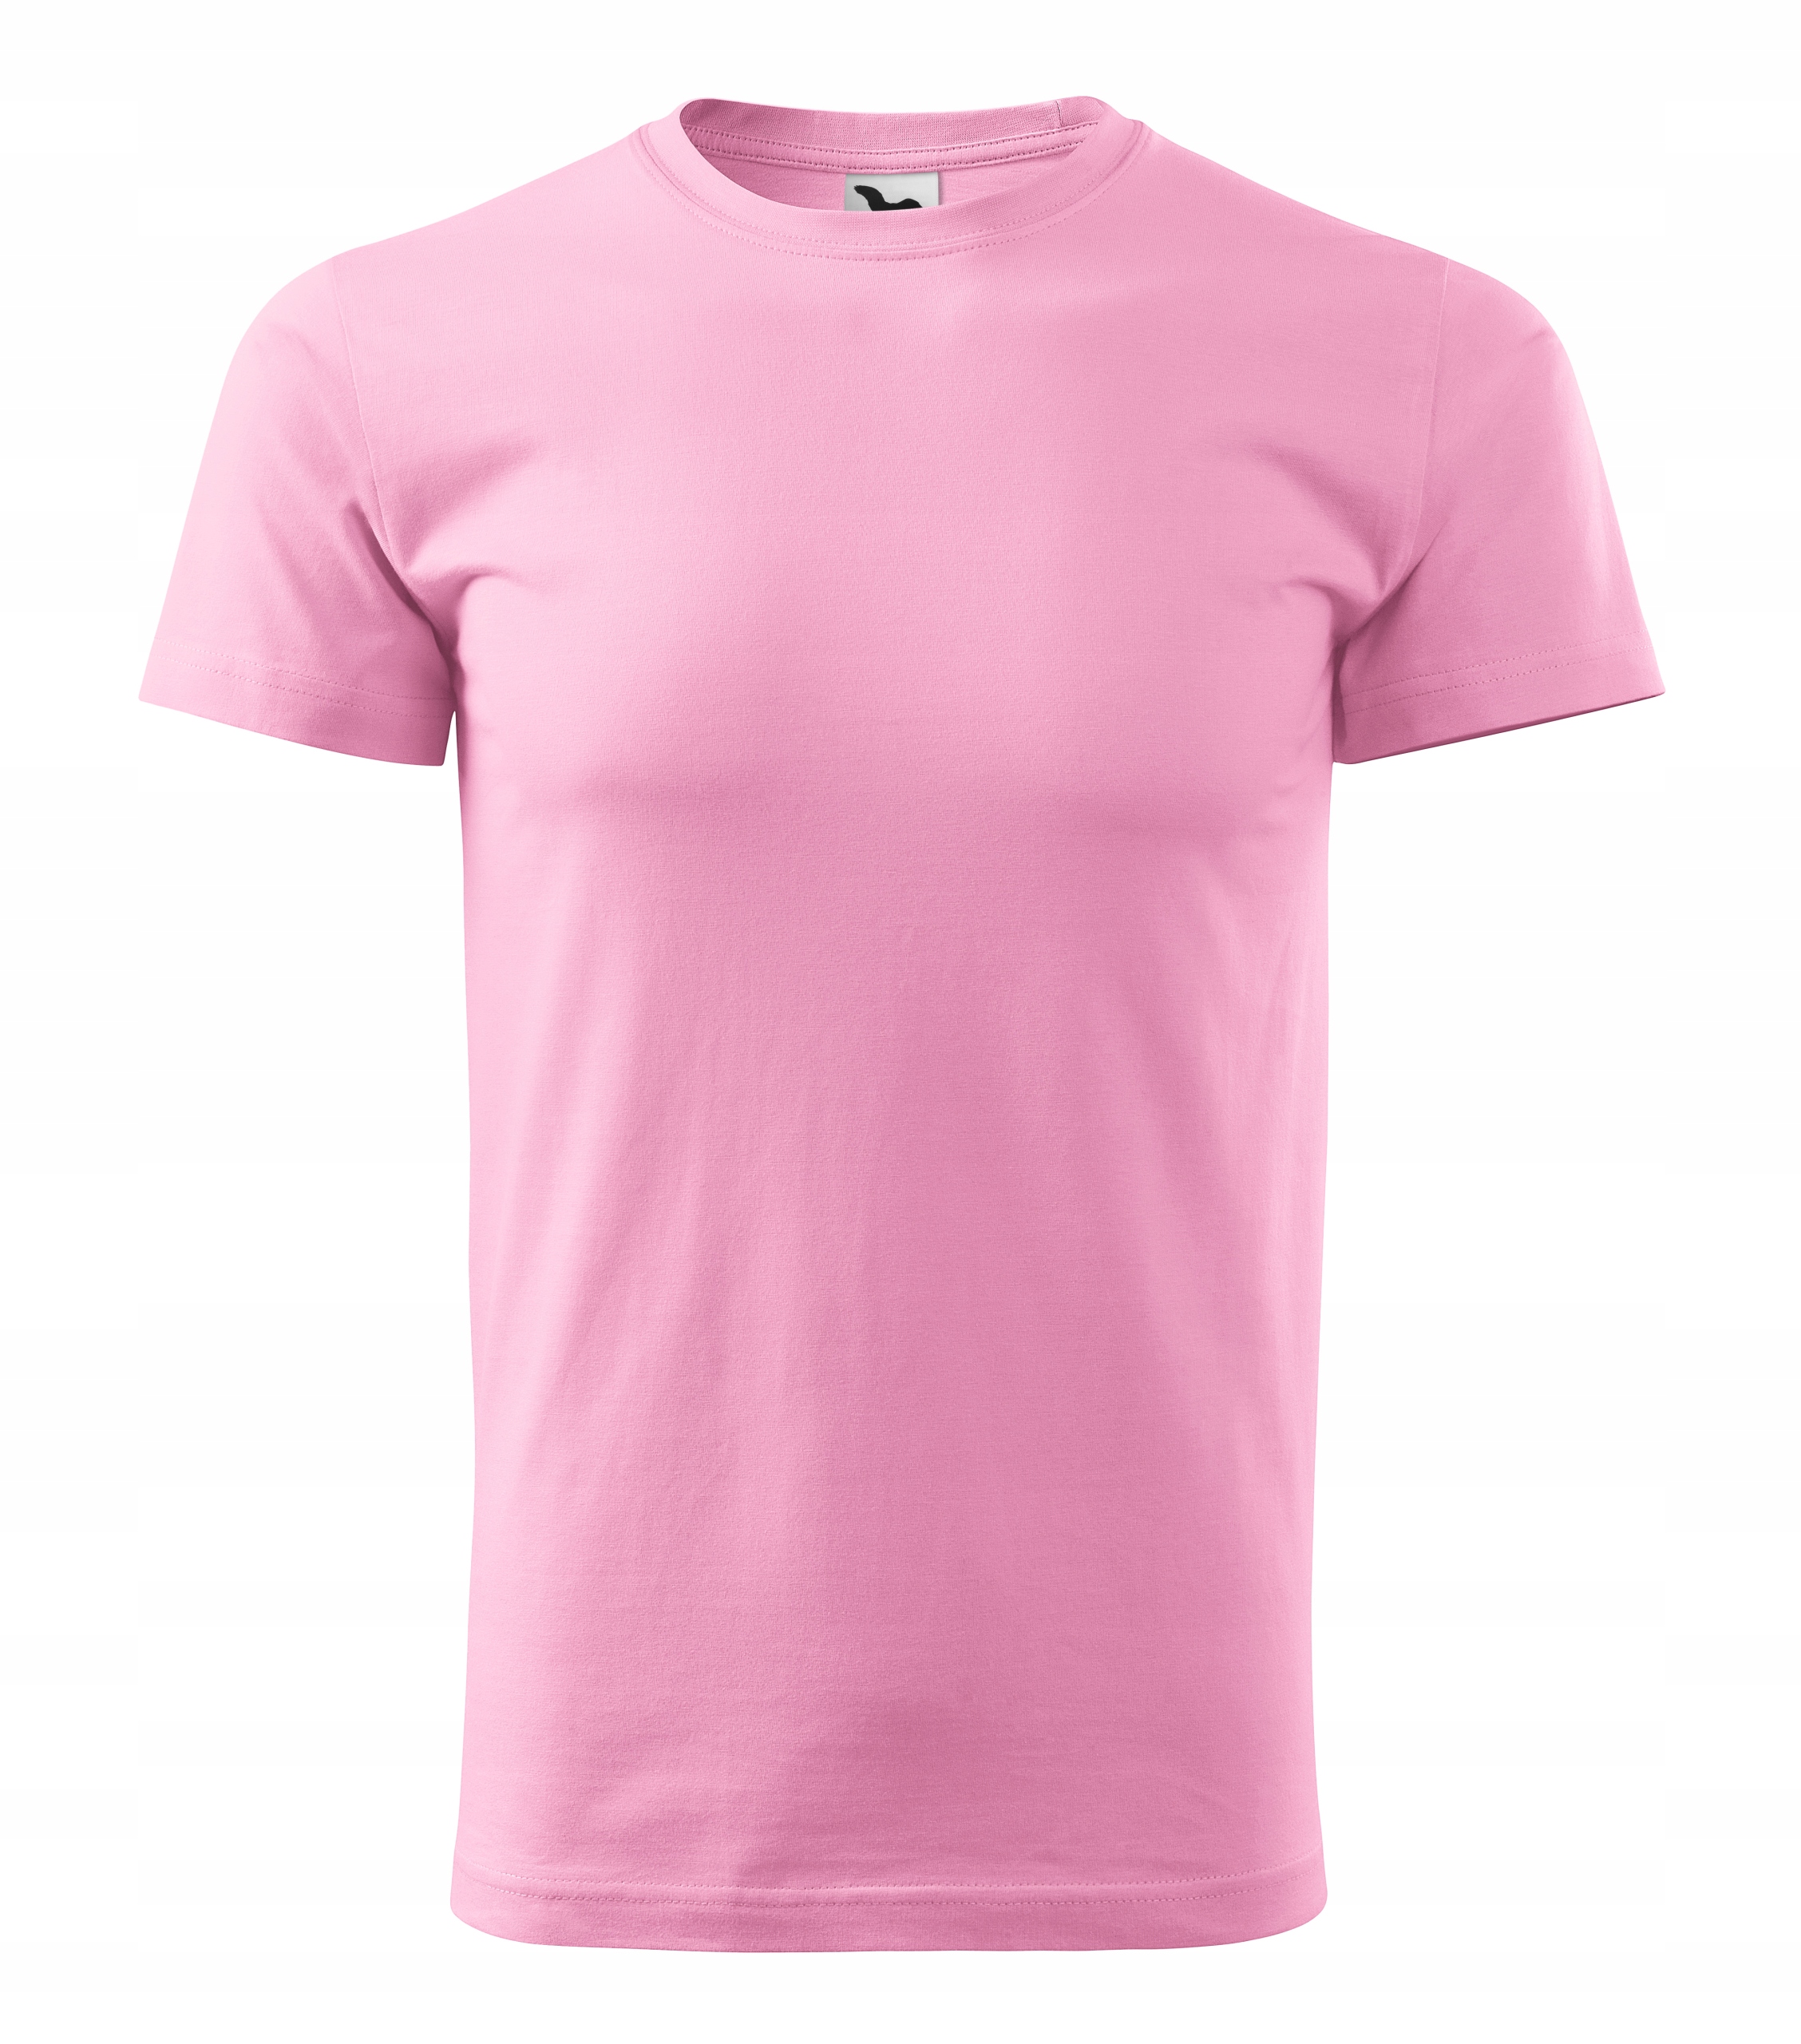 Розовая футболка мужская. Футболка розовая.